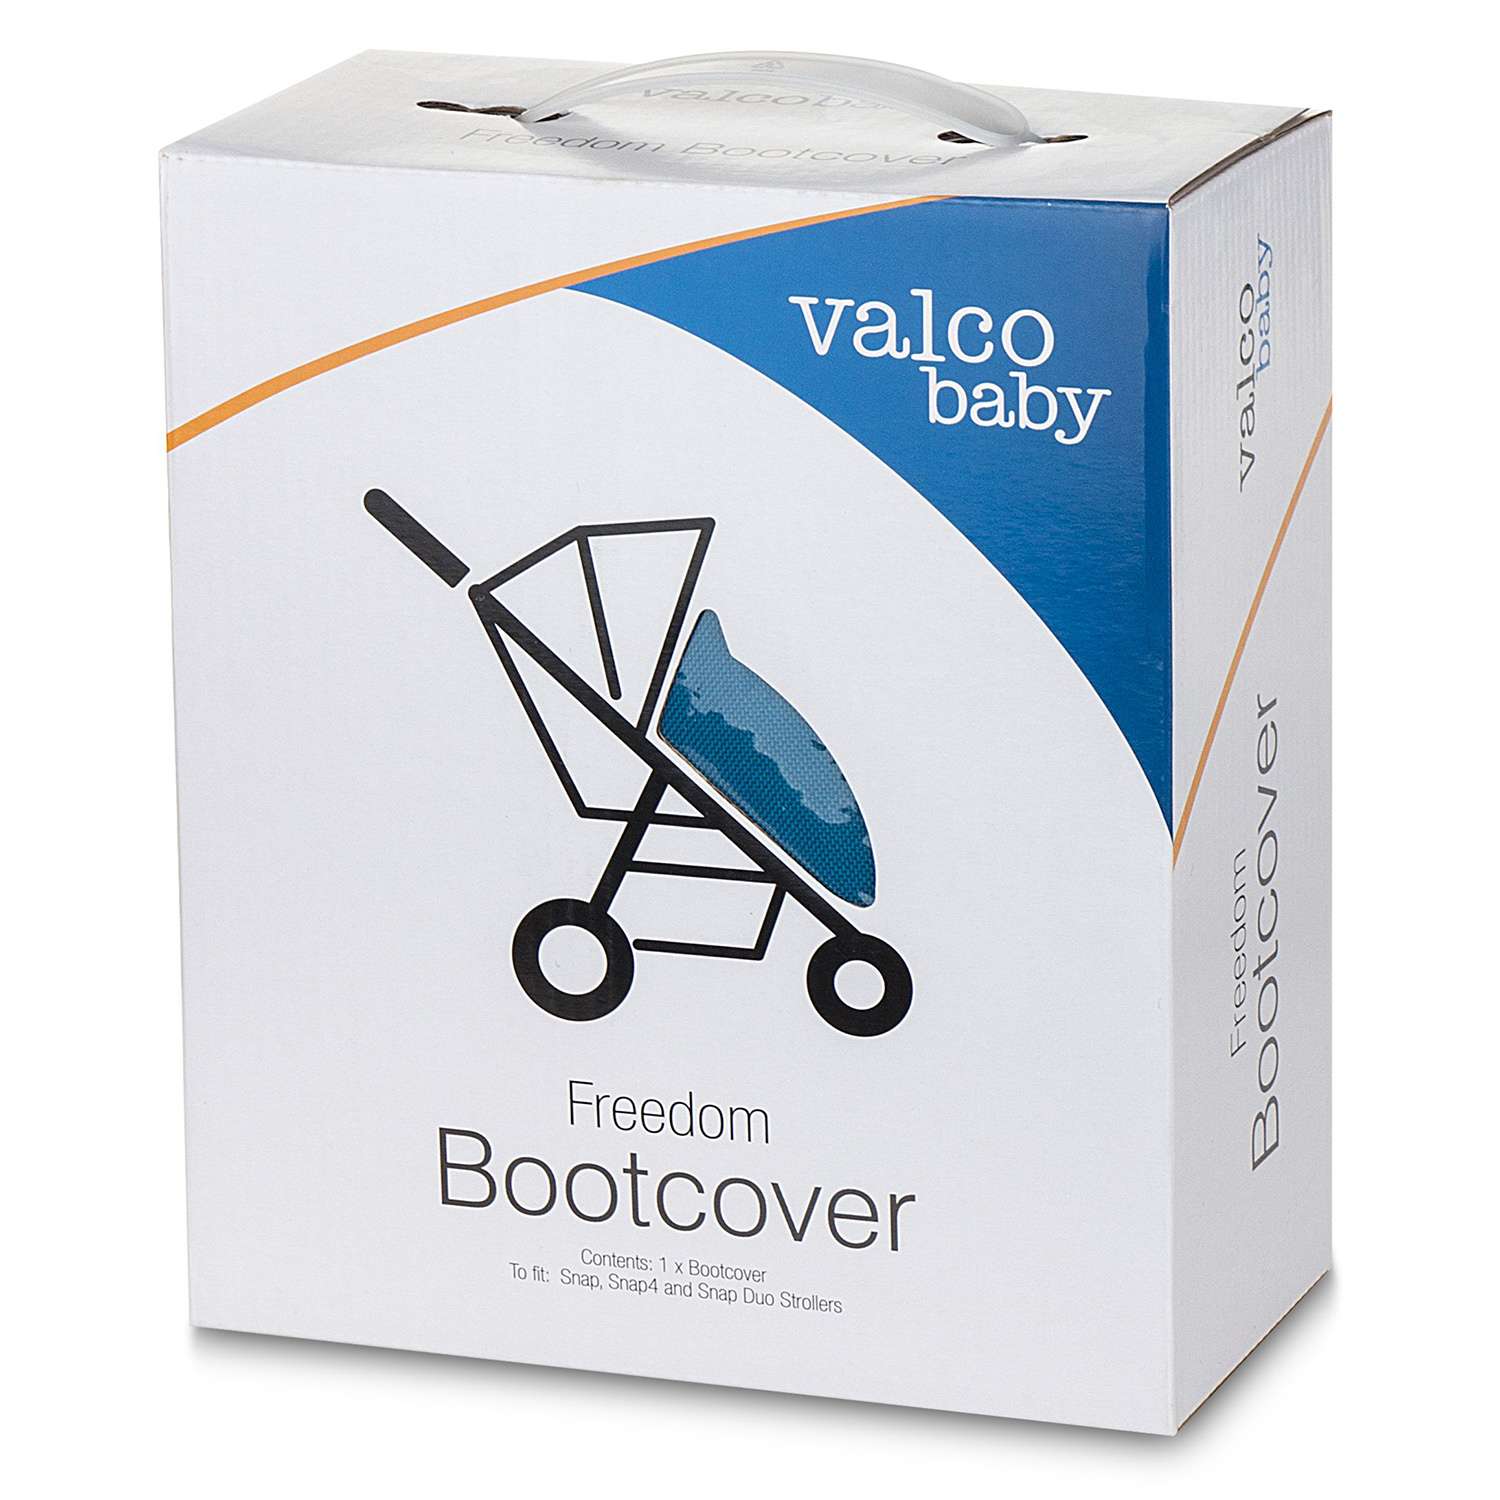 Чехол-накидка Valco baby на коляску Boot Cover Snap Duo/Ocean Blue 9889 - фото 3